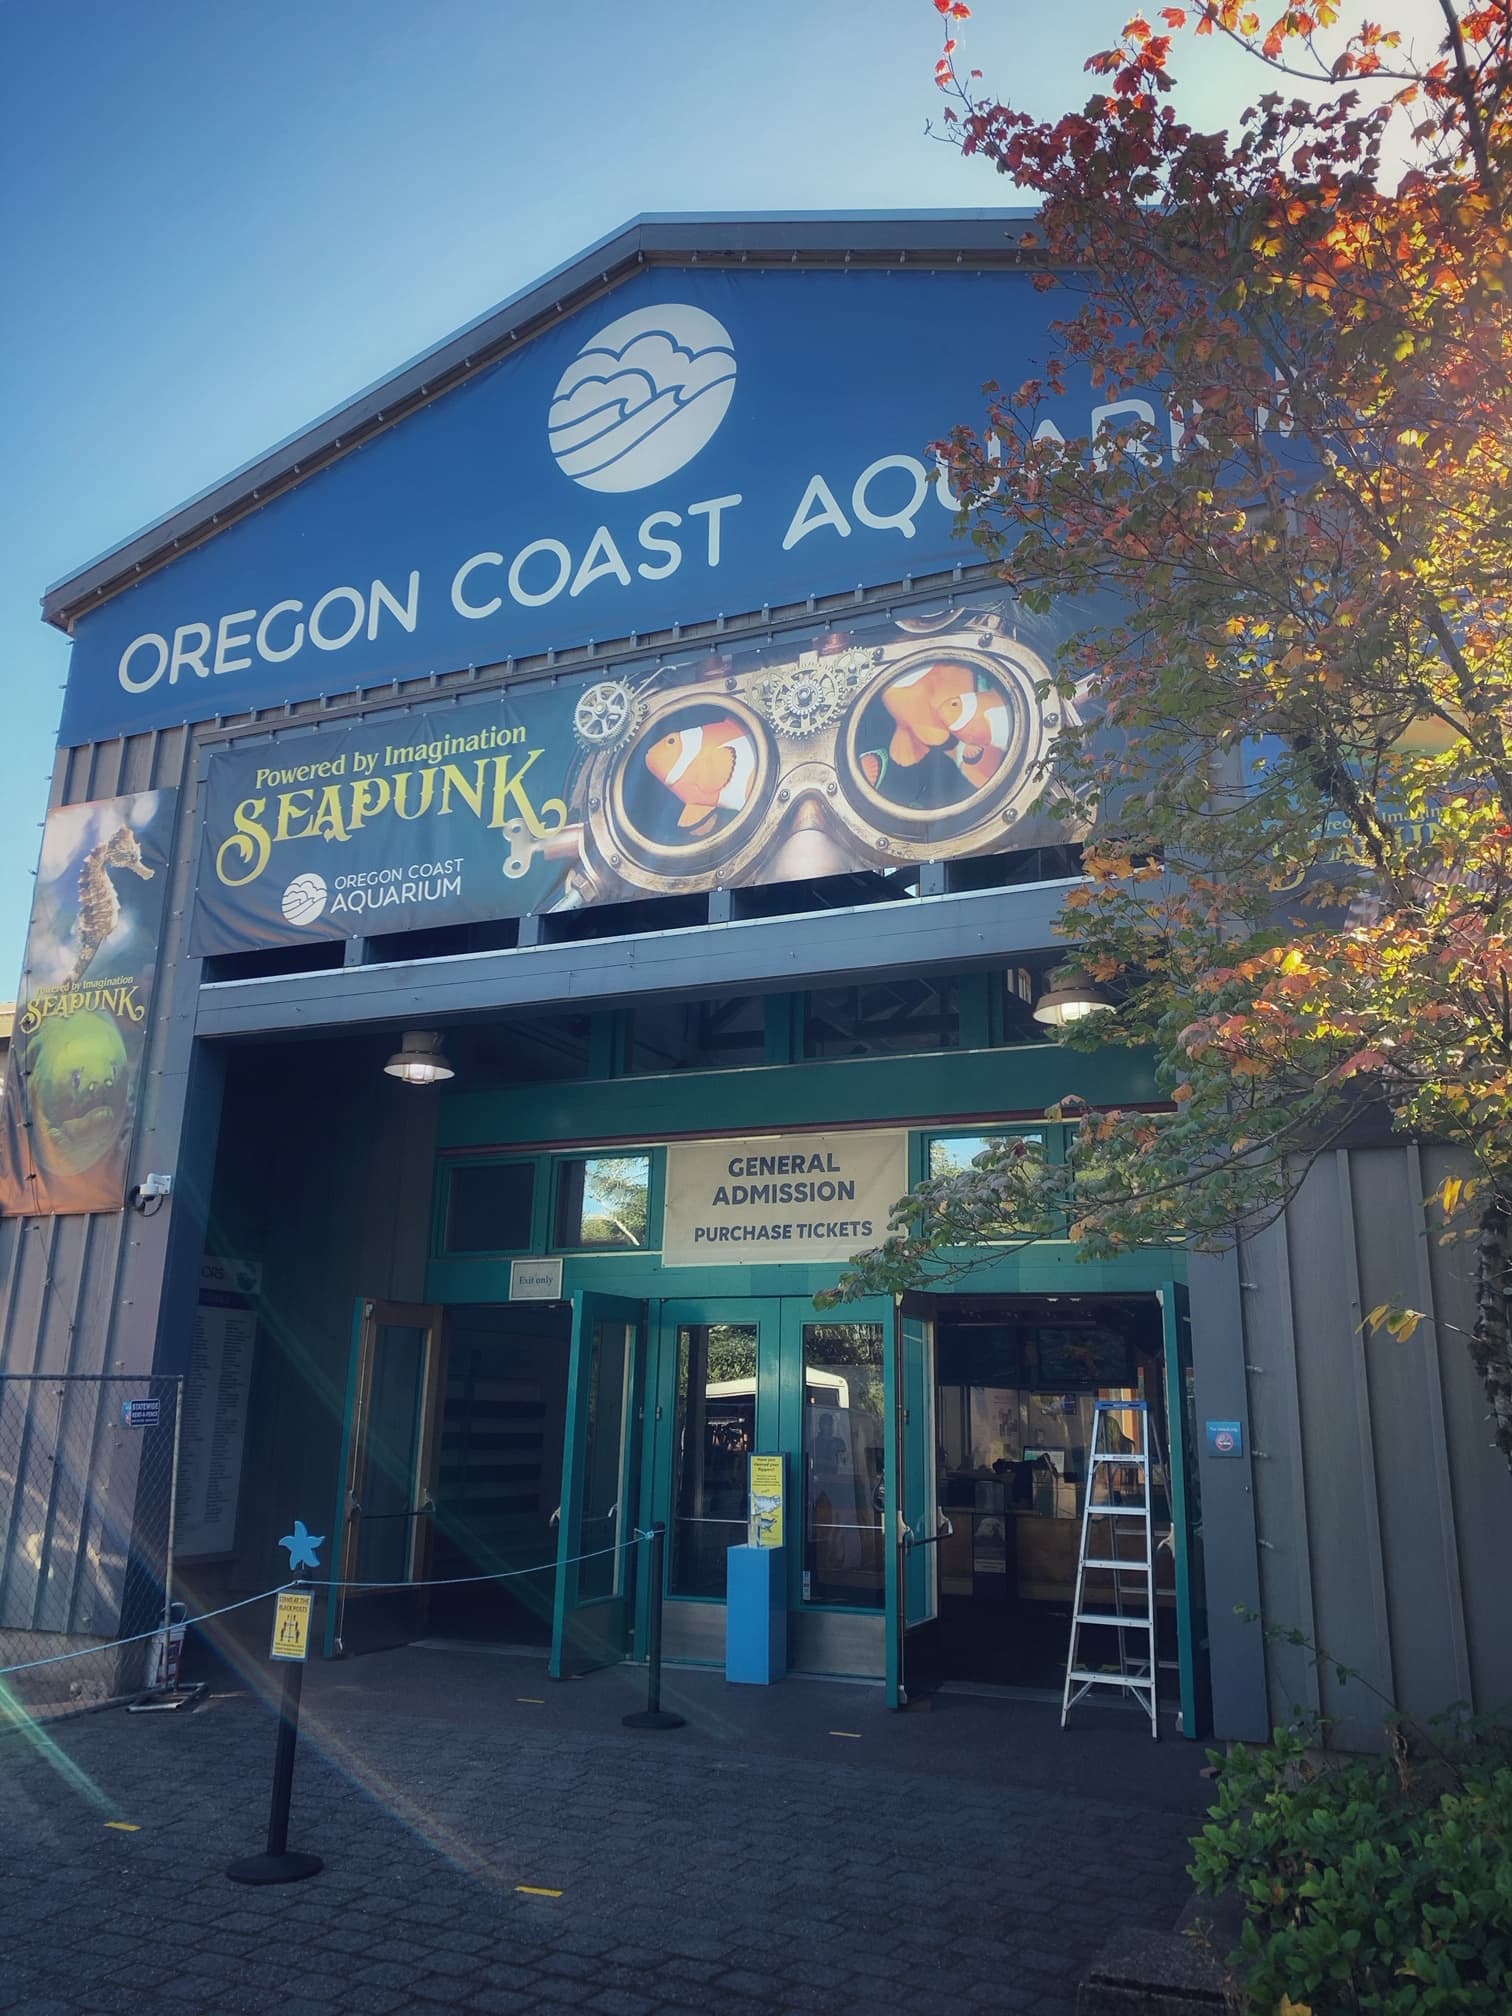 Oregon coast aquarium at newport oregon